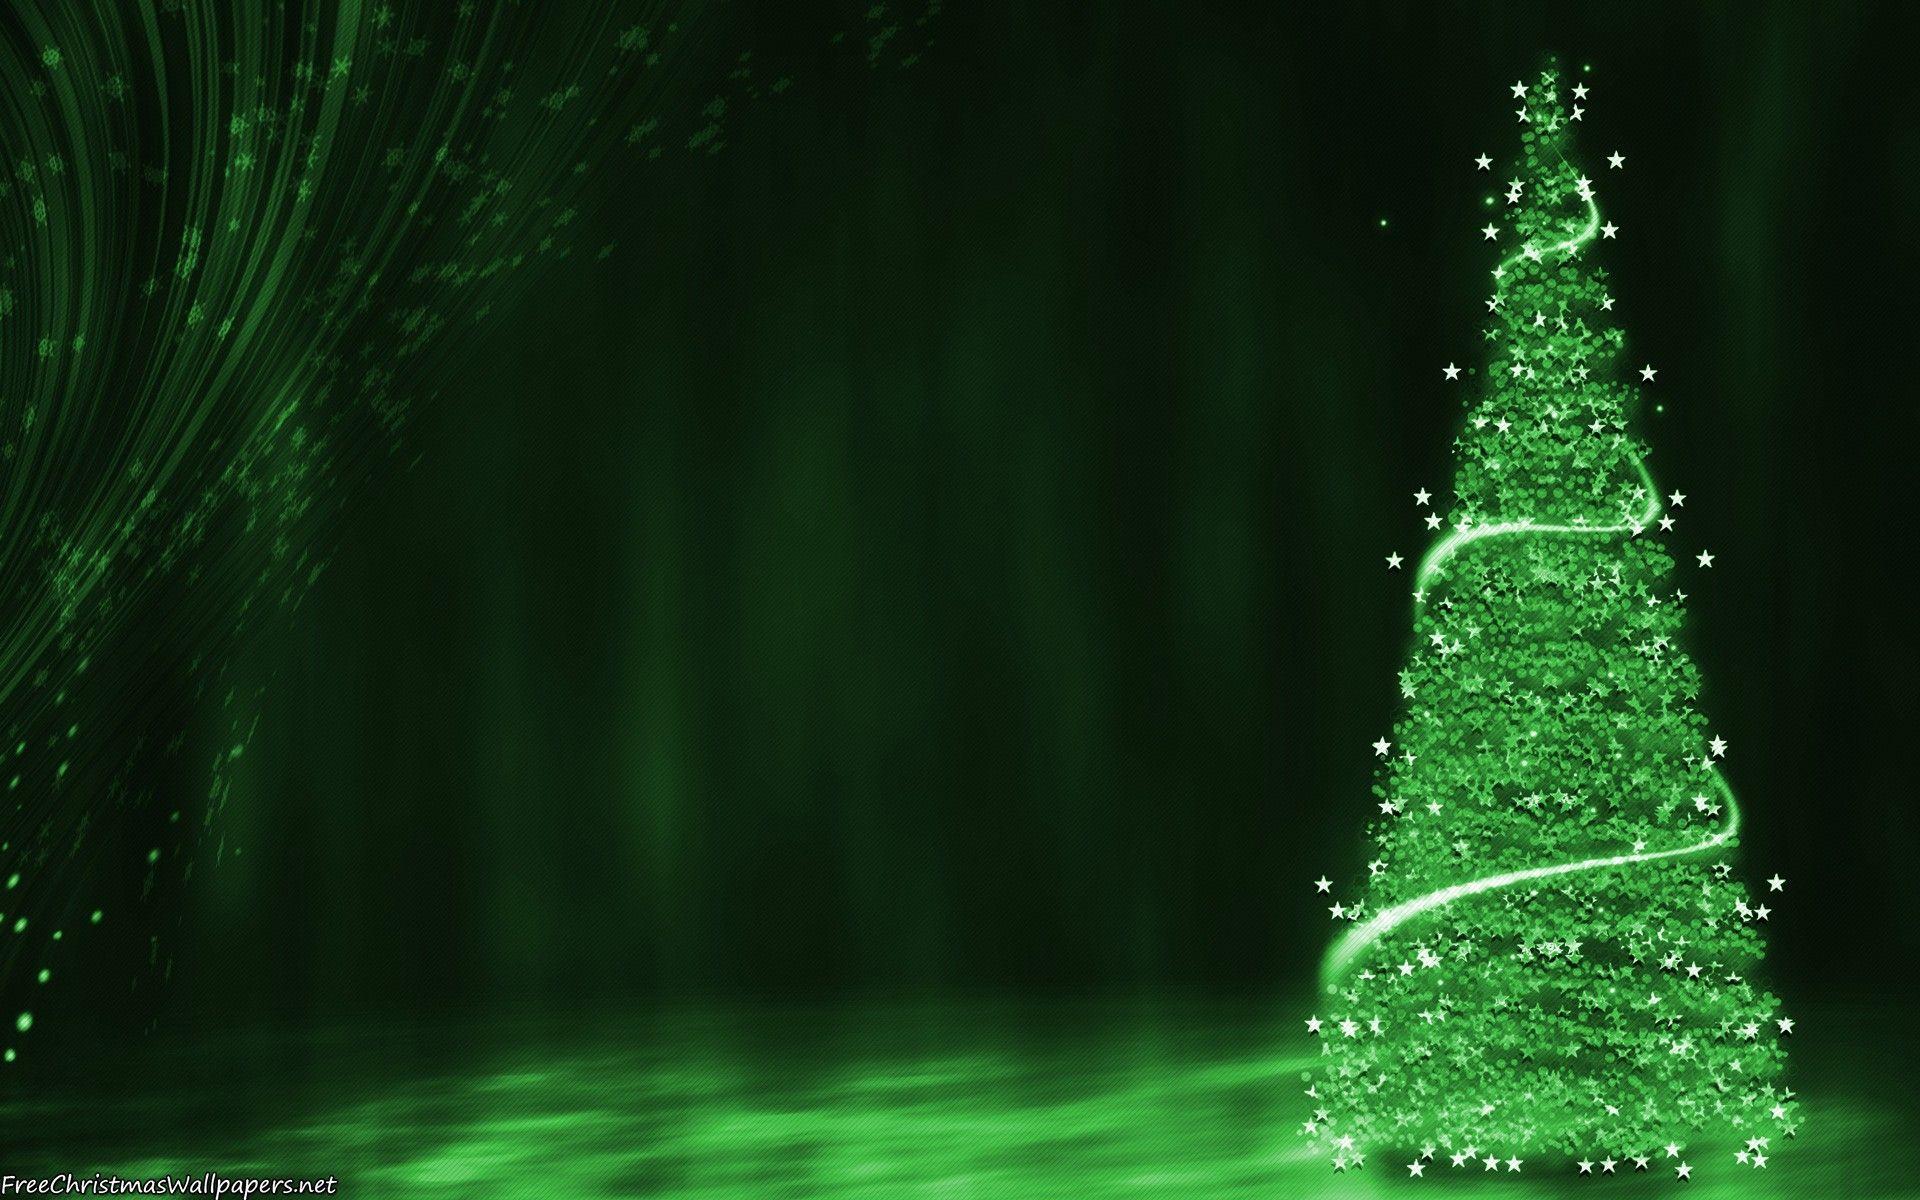 Hình nền Giáng sinh màu xanh lá cây là món quà tuyệt vời cho mọi người trong mùa lễ này. Với thiết kế đầy phong cách và sang trọng, hình nền này sẽ mang lại cho bạn cảm giác thật tuyệt vời trong không khí náo nức của Giáng sinh.